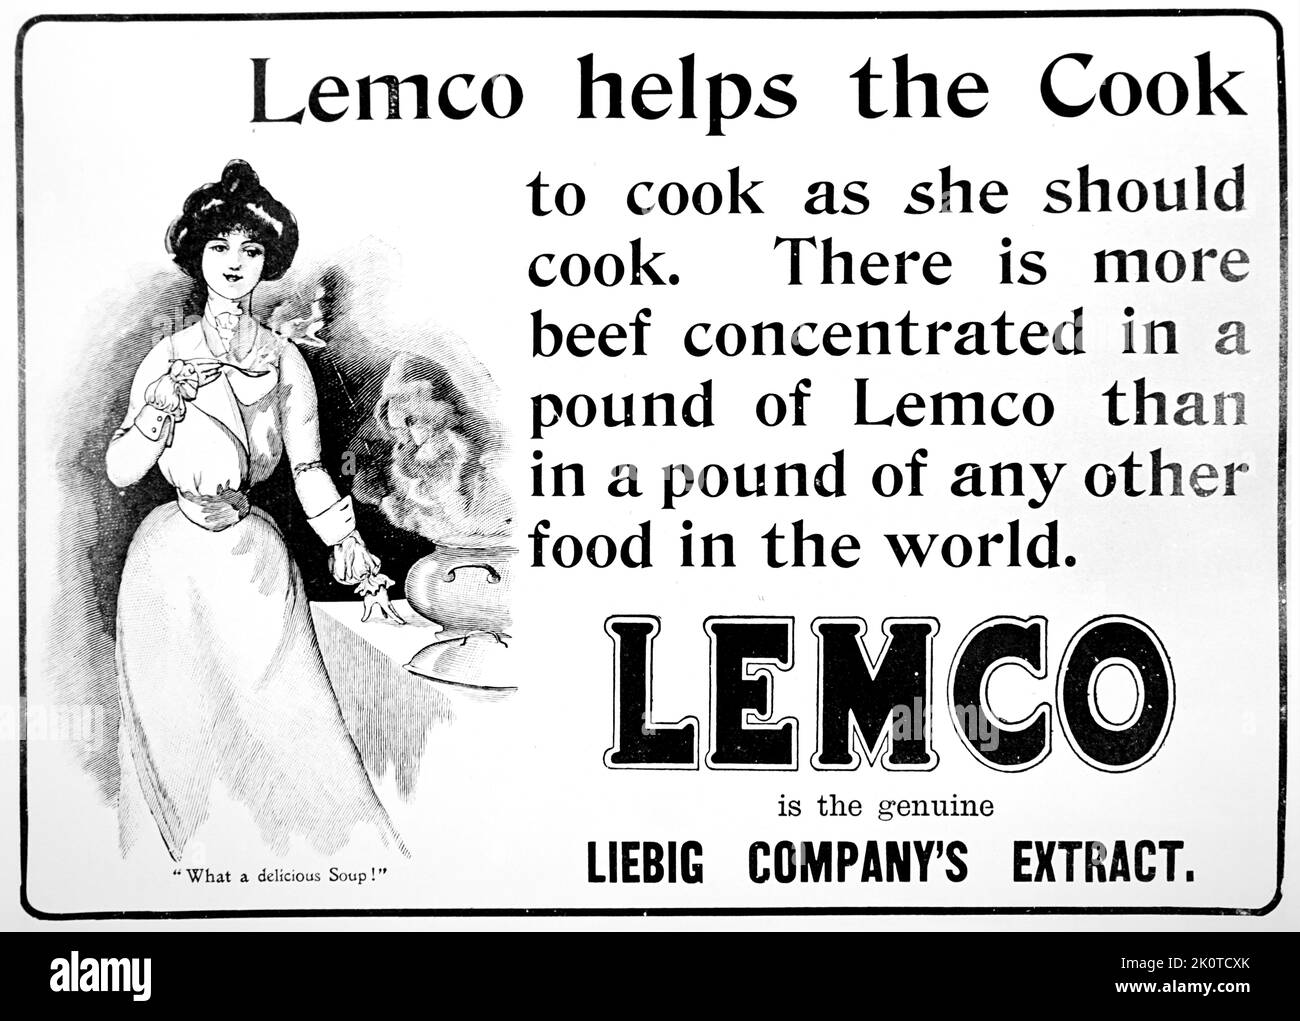 Leibig annuncio per 'Lemco' estratto alimentare per la cottura. 1880 Foto Stock